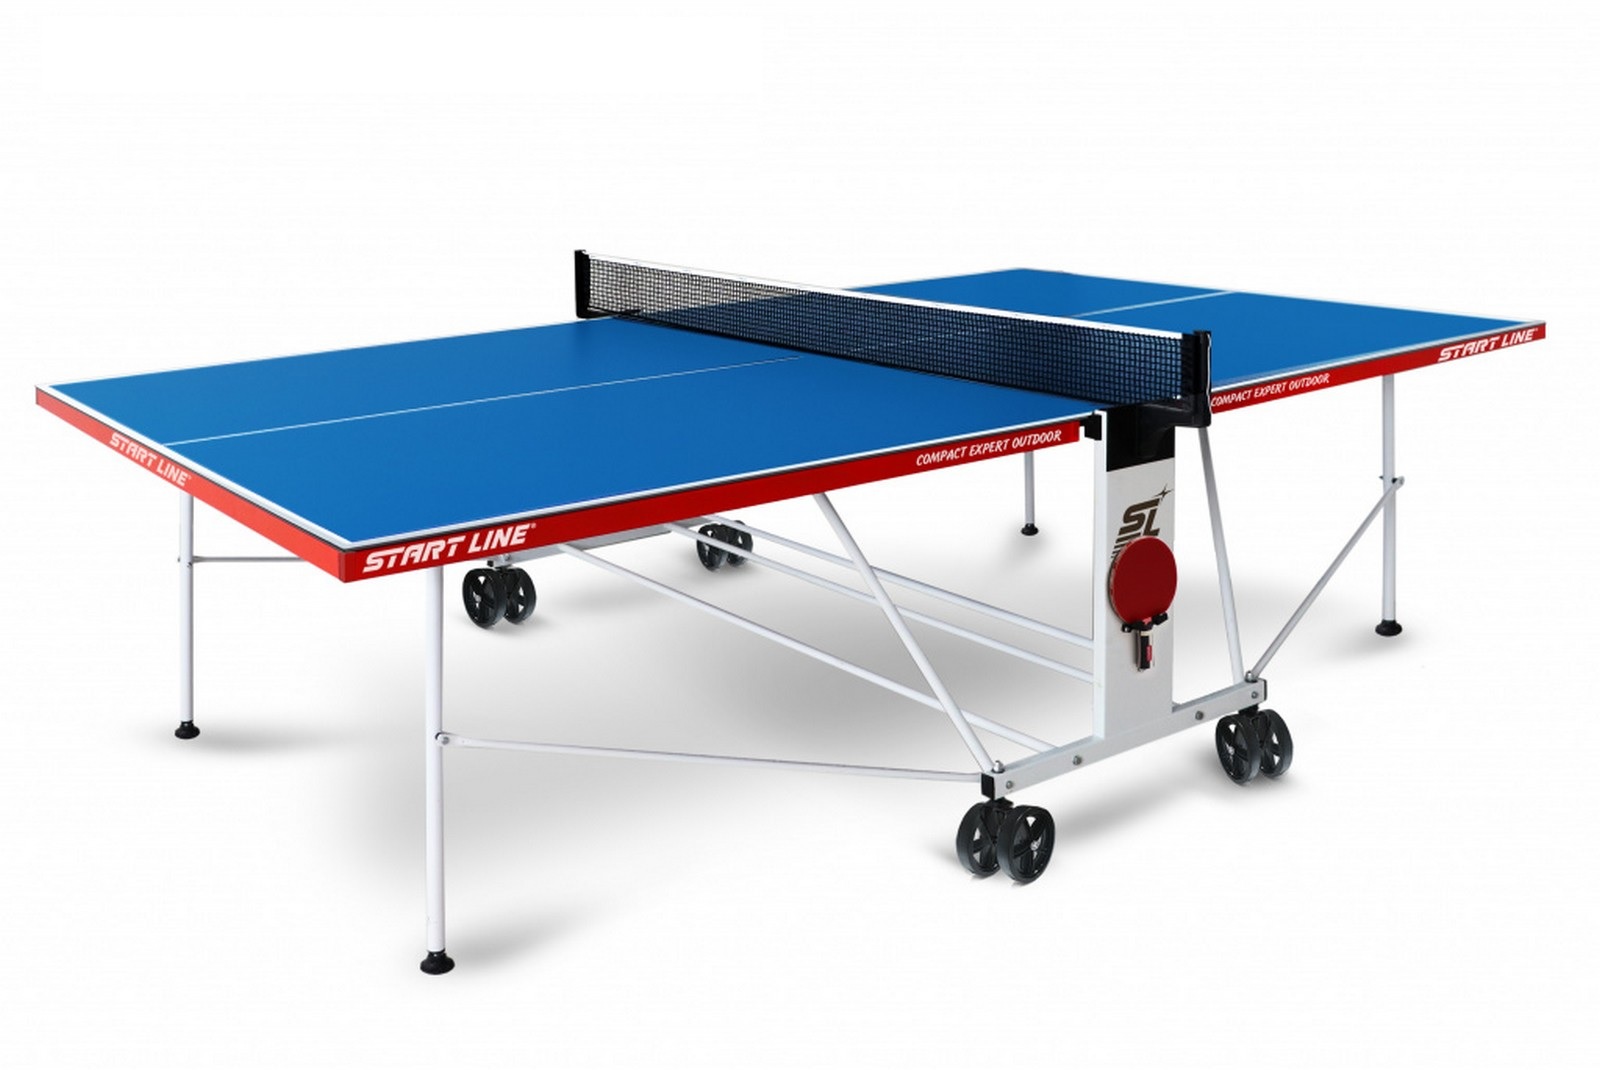 Купить Теннисный стол Start line Compact EXPERT Outdoor 6 Blue, Line